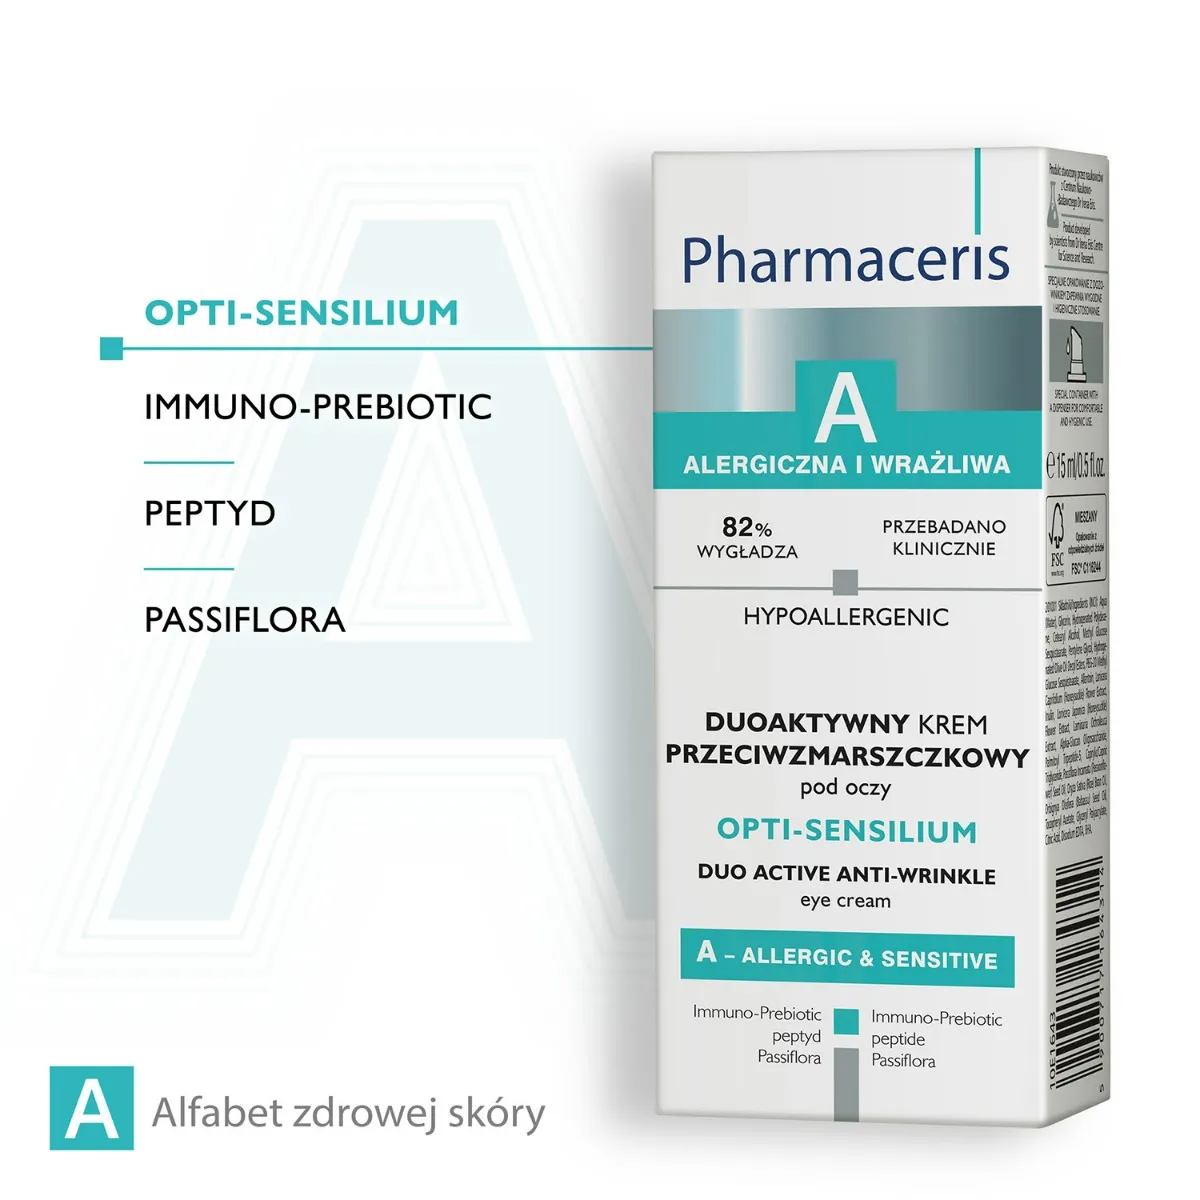 Pharmaceris A Opti-Sensilium Duoaktywny krem przeciwzmarszczkowy pod oczy, 15 ml 